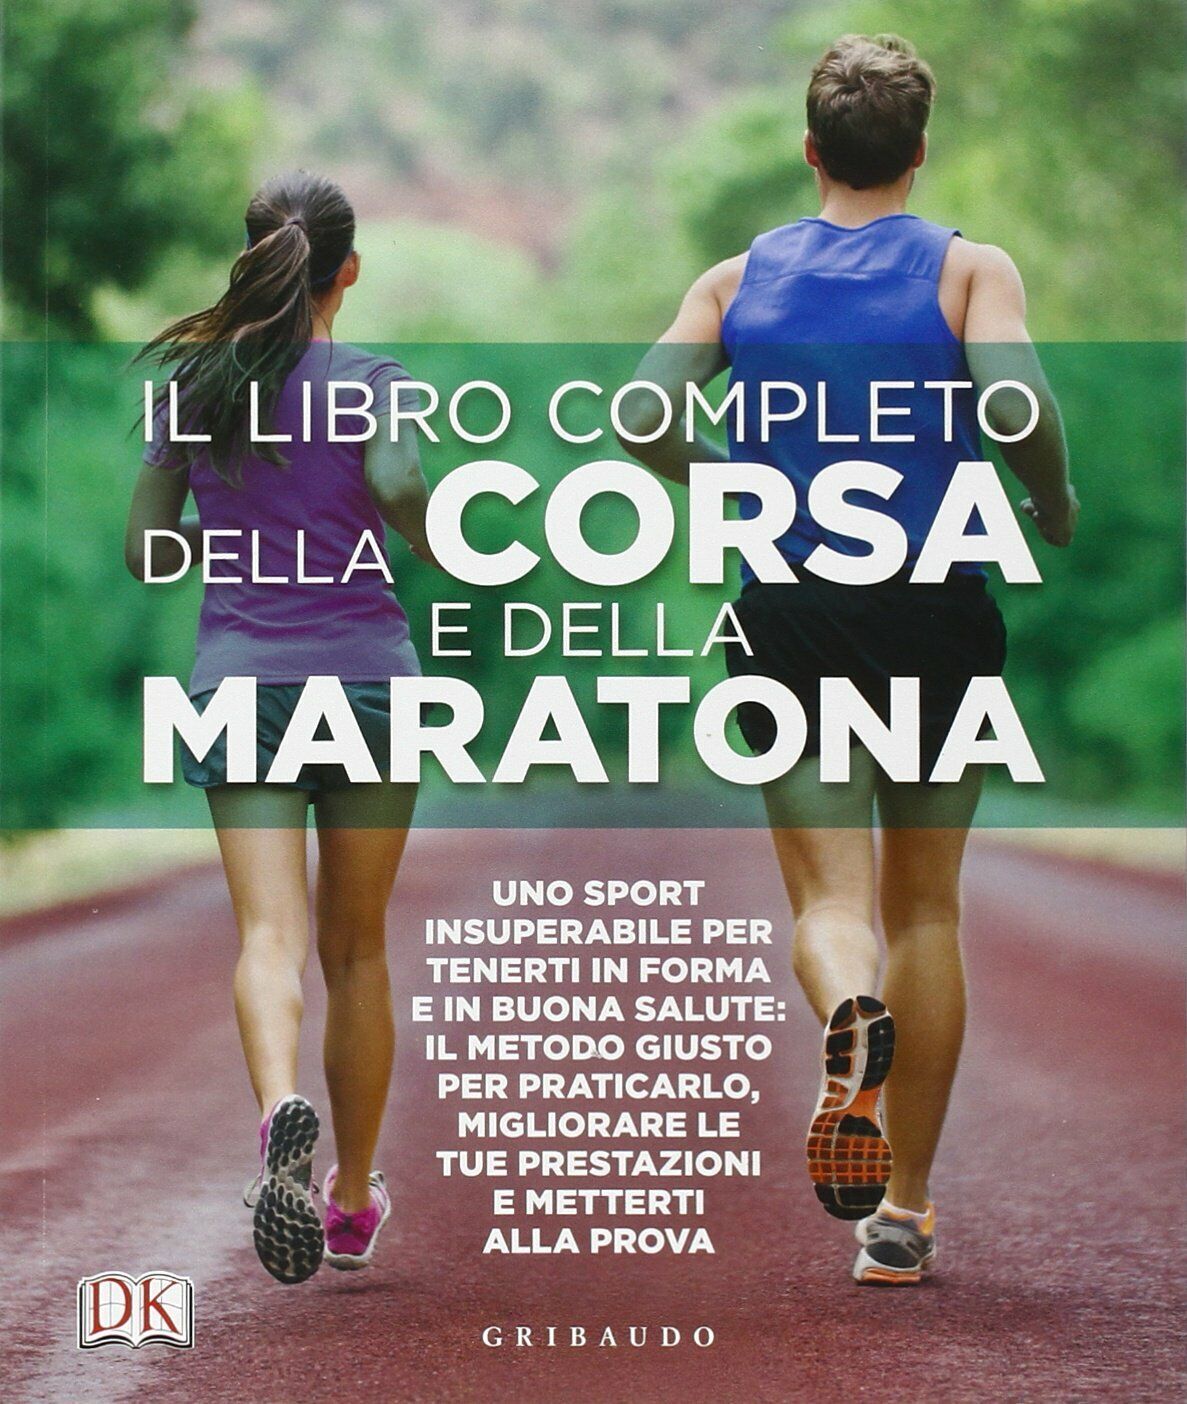 Il libro completo della corsa e della maratona - AA.VV. - Gribaudo, 2015